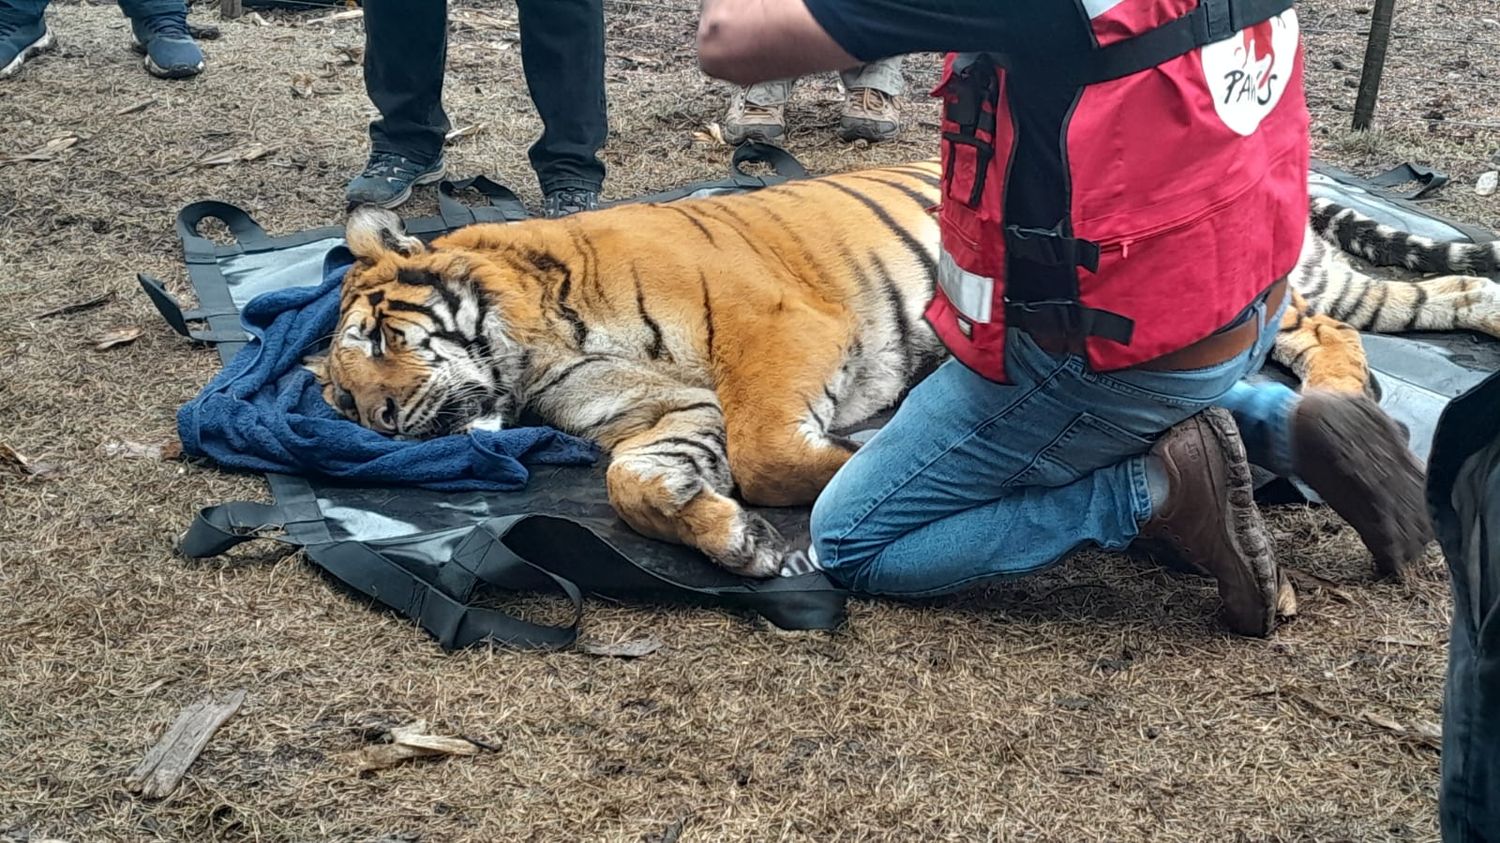 Increíble caso en Balcarce: Allanaron el campo de un hombre y hallaron dos tigres de bengala en cautiverio